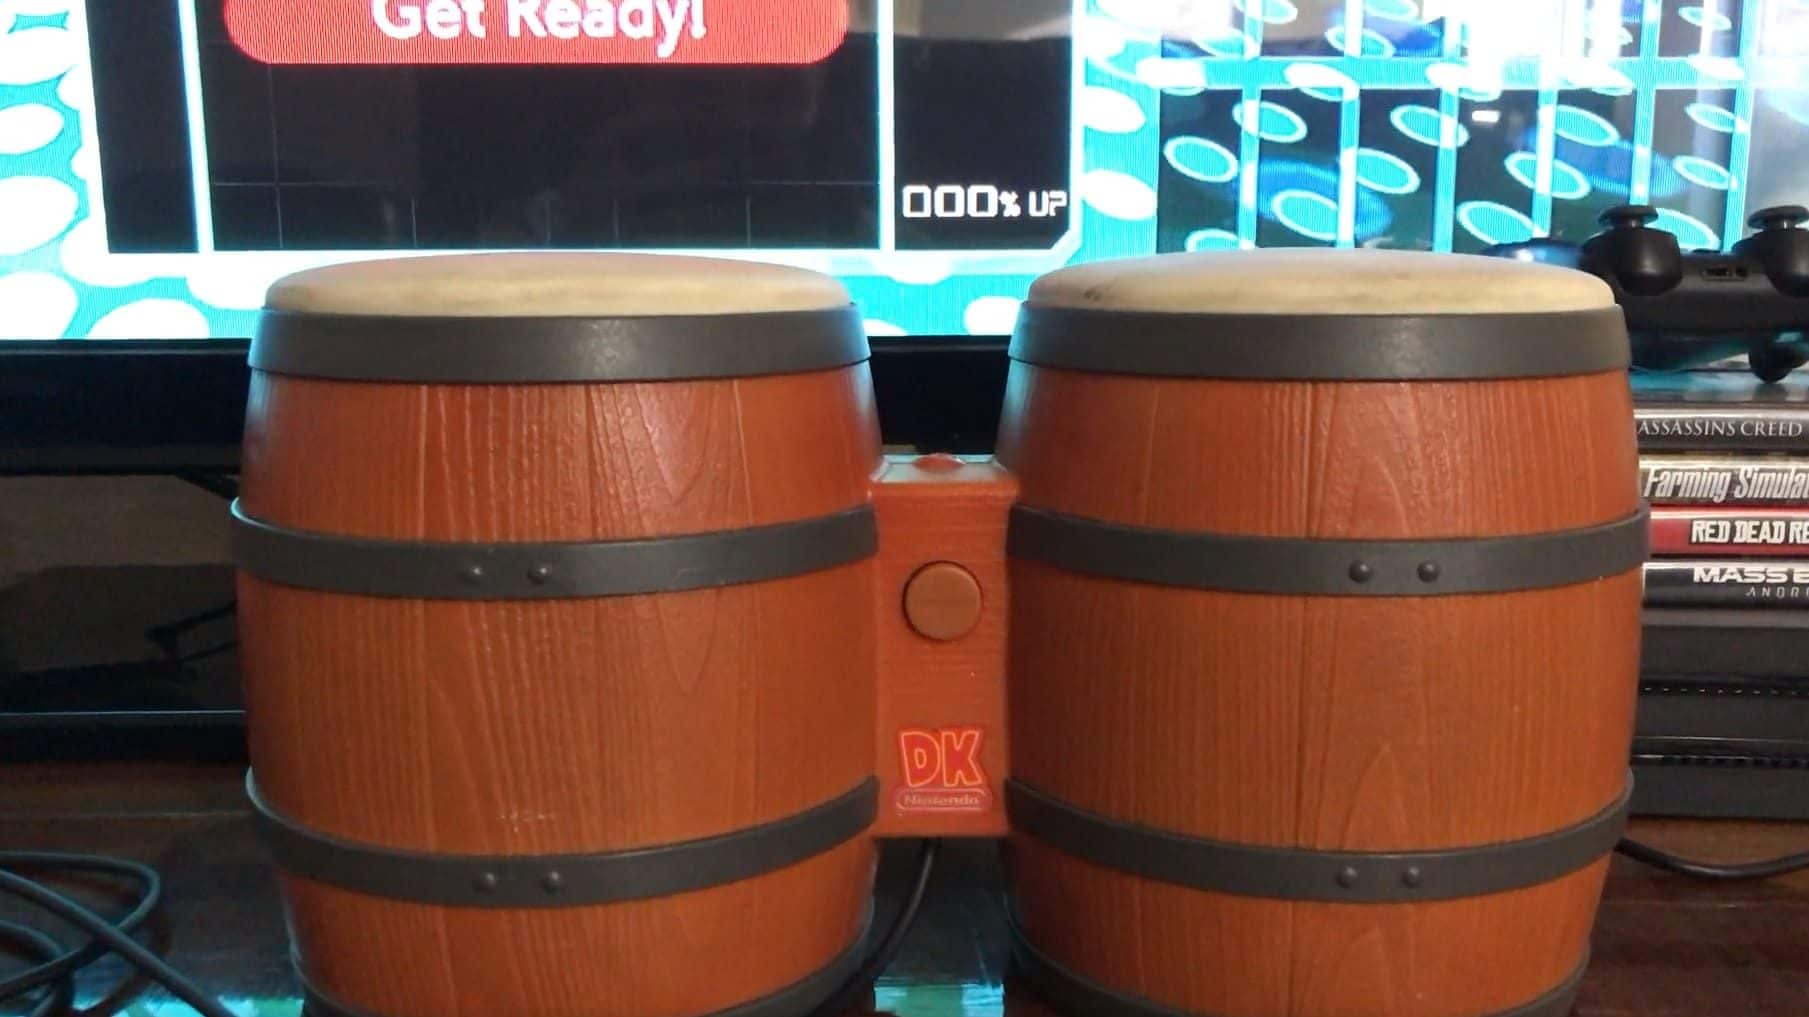 Vídeo: Una persona consigue jugar a Tetris 99 con los bongos de Donkey Kong